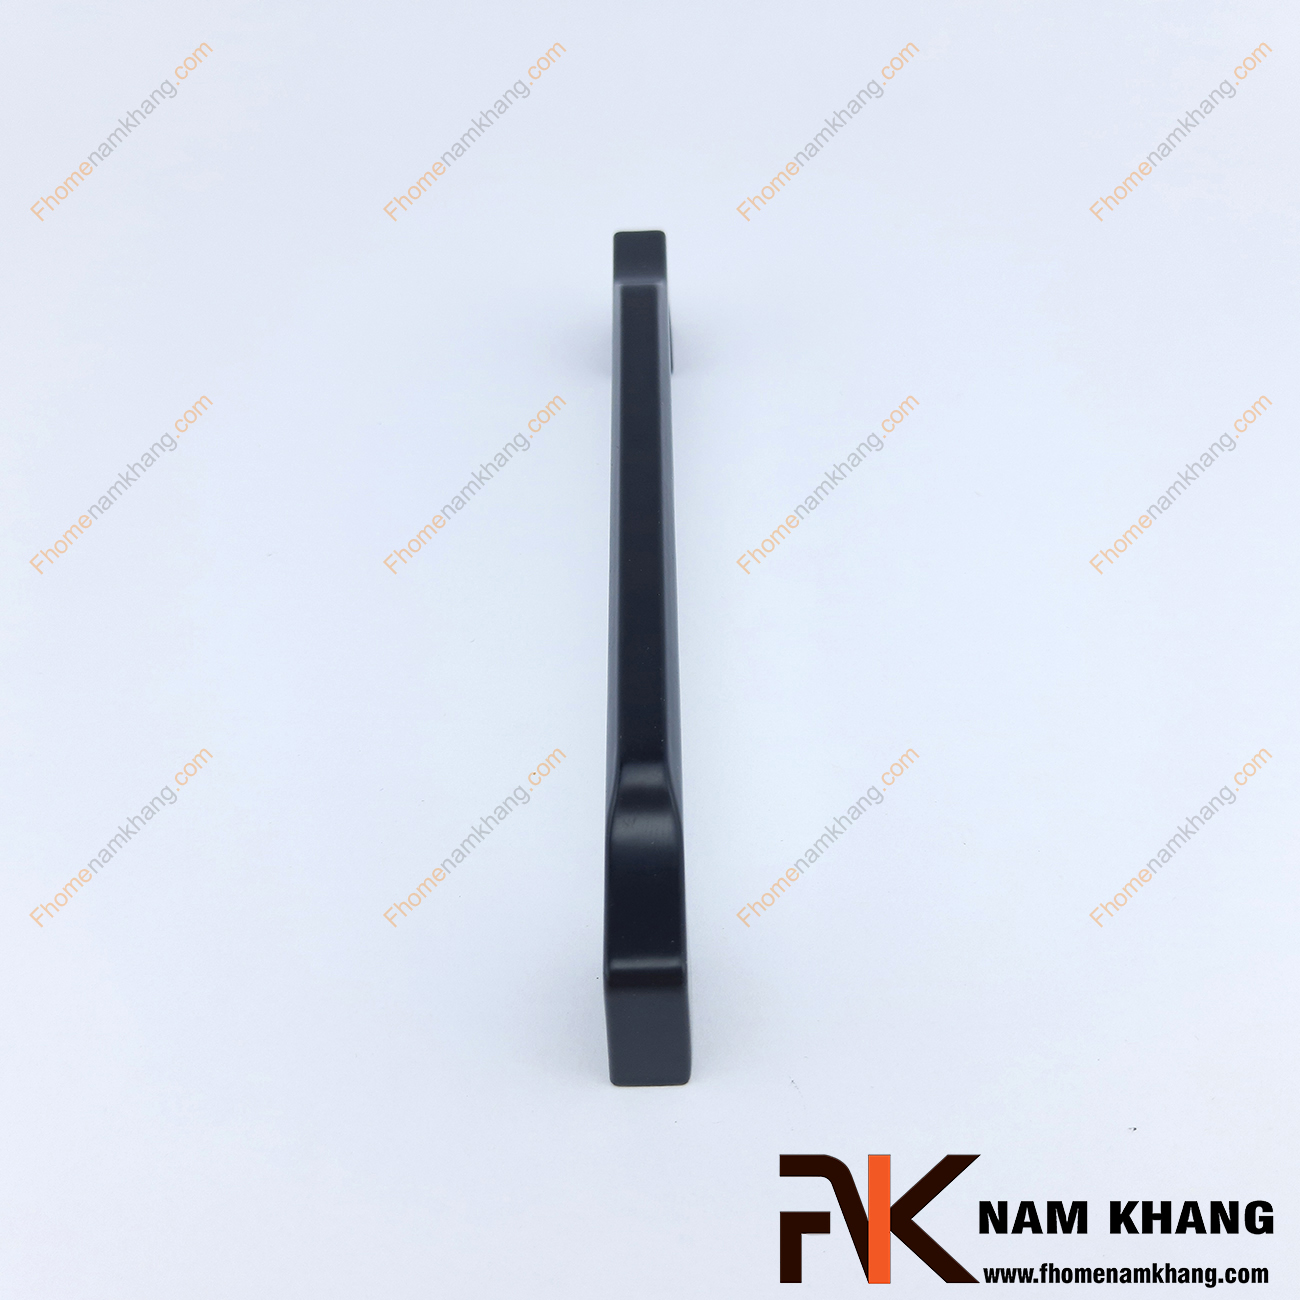 Tay nắm tủ màu đen dạng thanh bo tròn NK131-D là một thiết kế tay nắm tủ có thiết kế khá đơn giản.